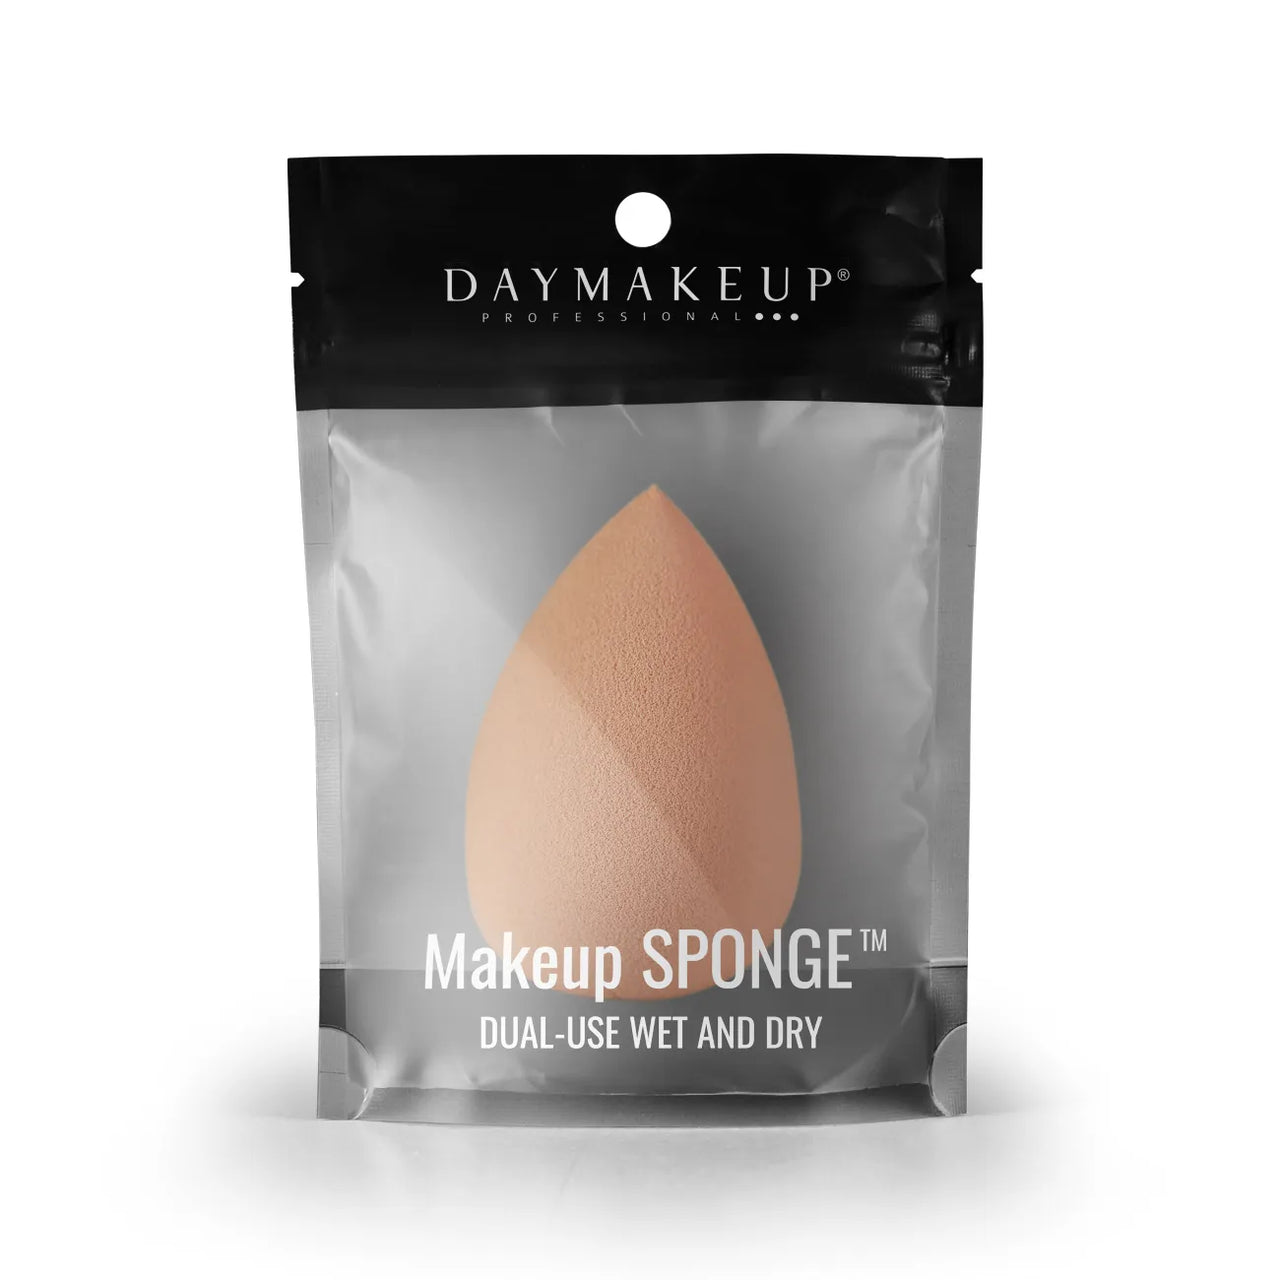 Makeup Sponge - DayMakeUp - Tangerine